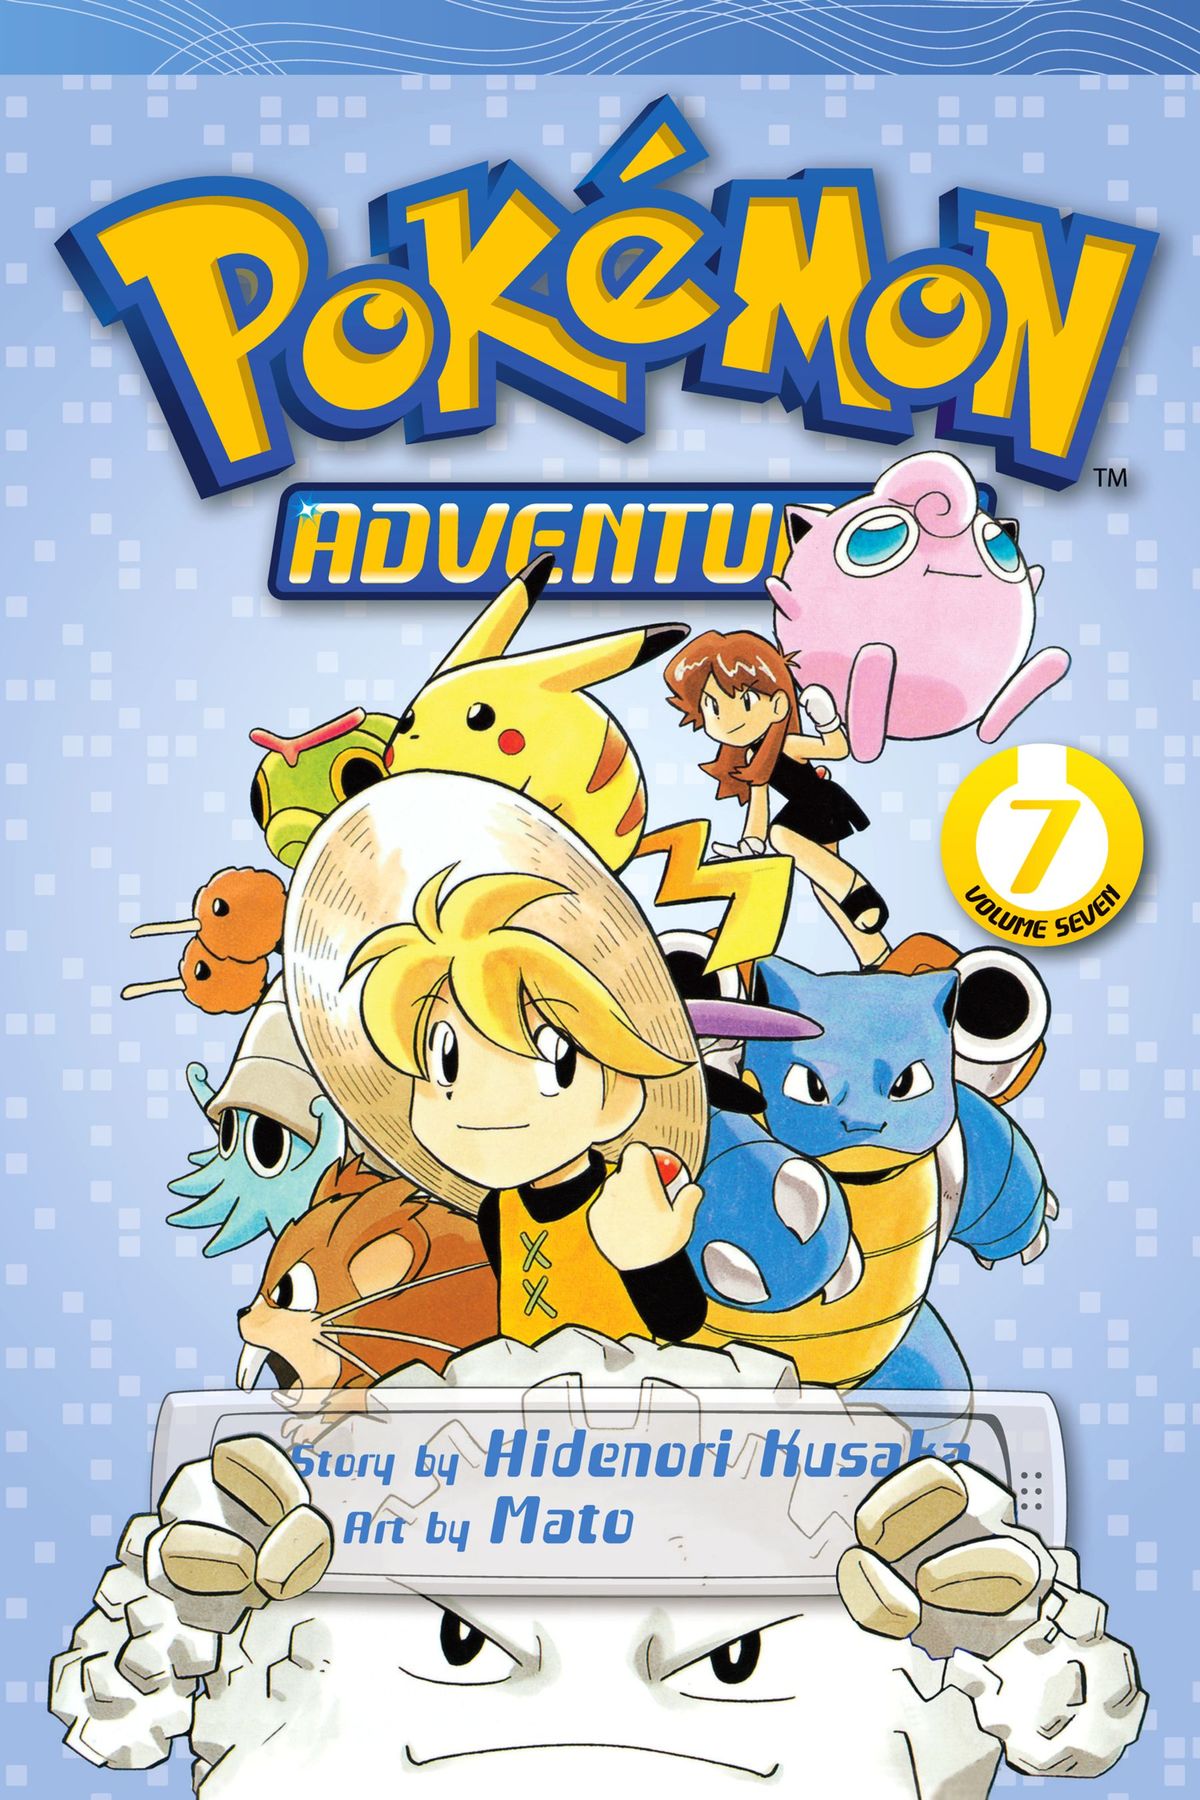 Pokémon Adventures Volume 7 Bulbapedia The Community Driven Pokémon Encyclopedia